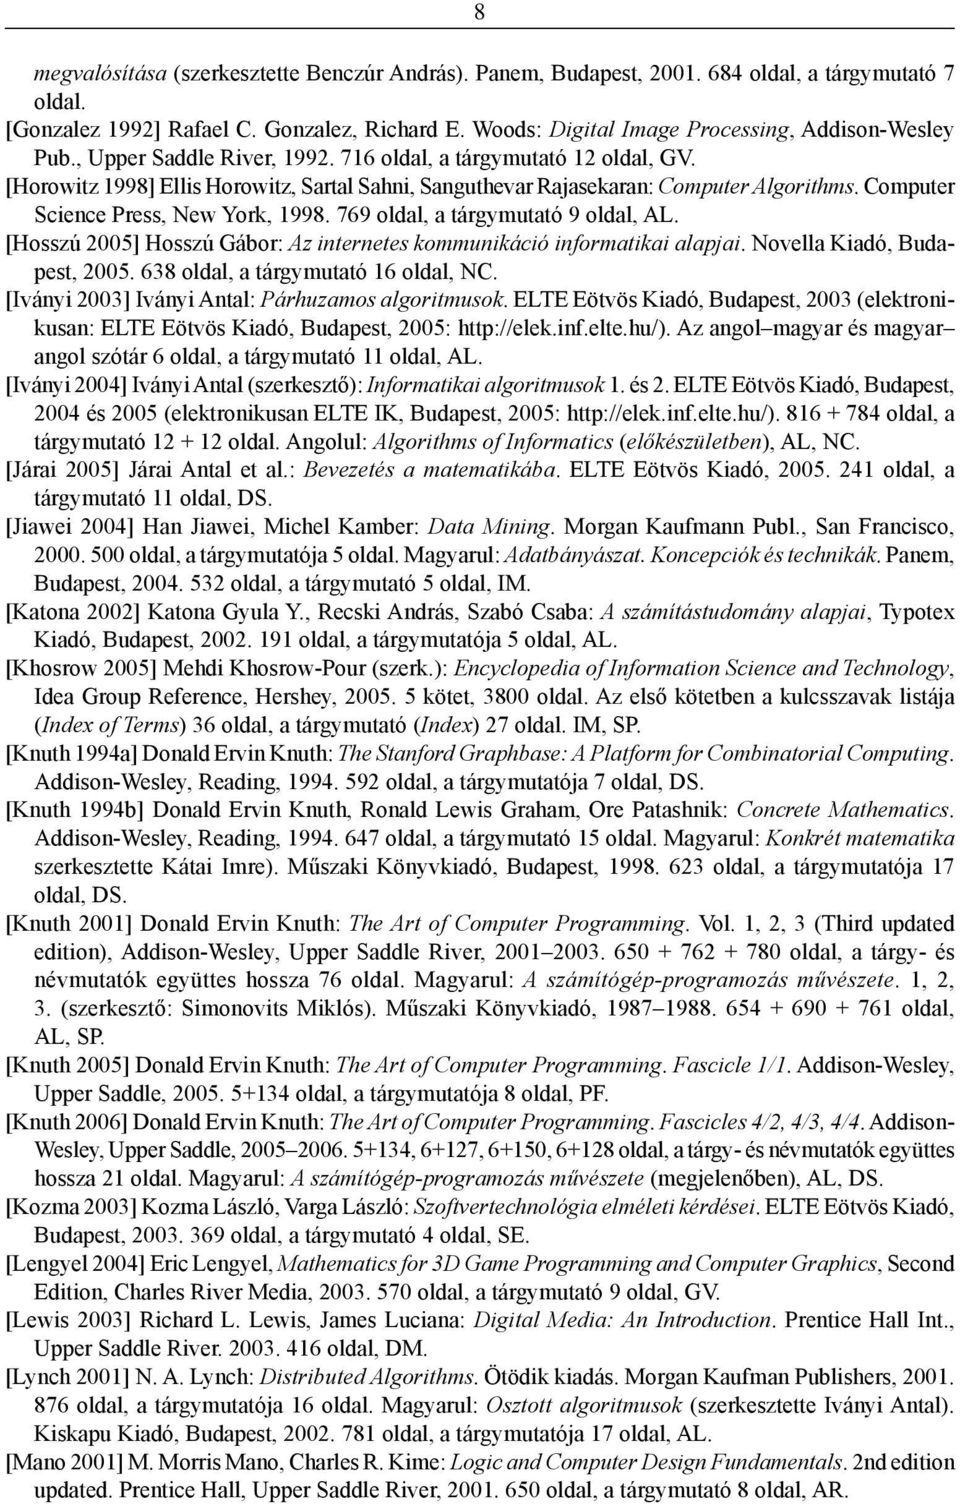 [Horowitz 1998] Ellis Horowitz, Sartal Sahni, Sanguthevar Rajasekaran: Computer Algorithms. Computer Science Press, New York, 1998. 769 oldal, a tárgymutató 9 oldal, AL.